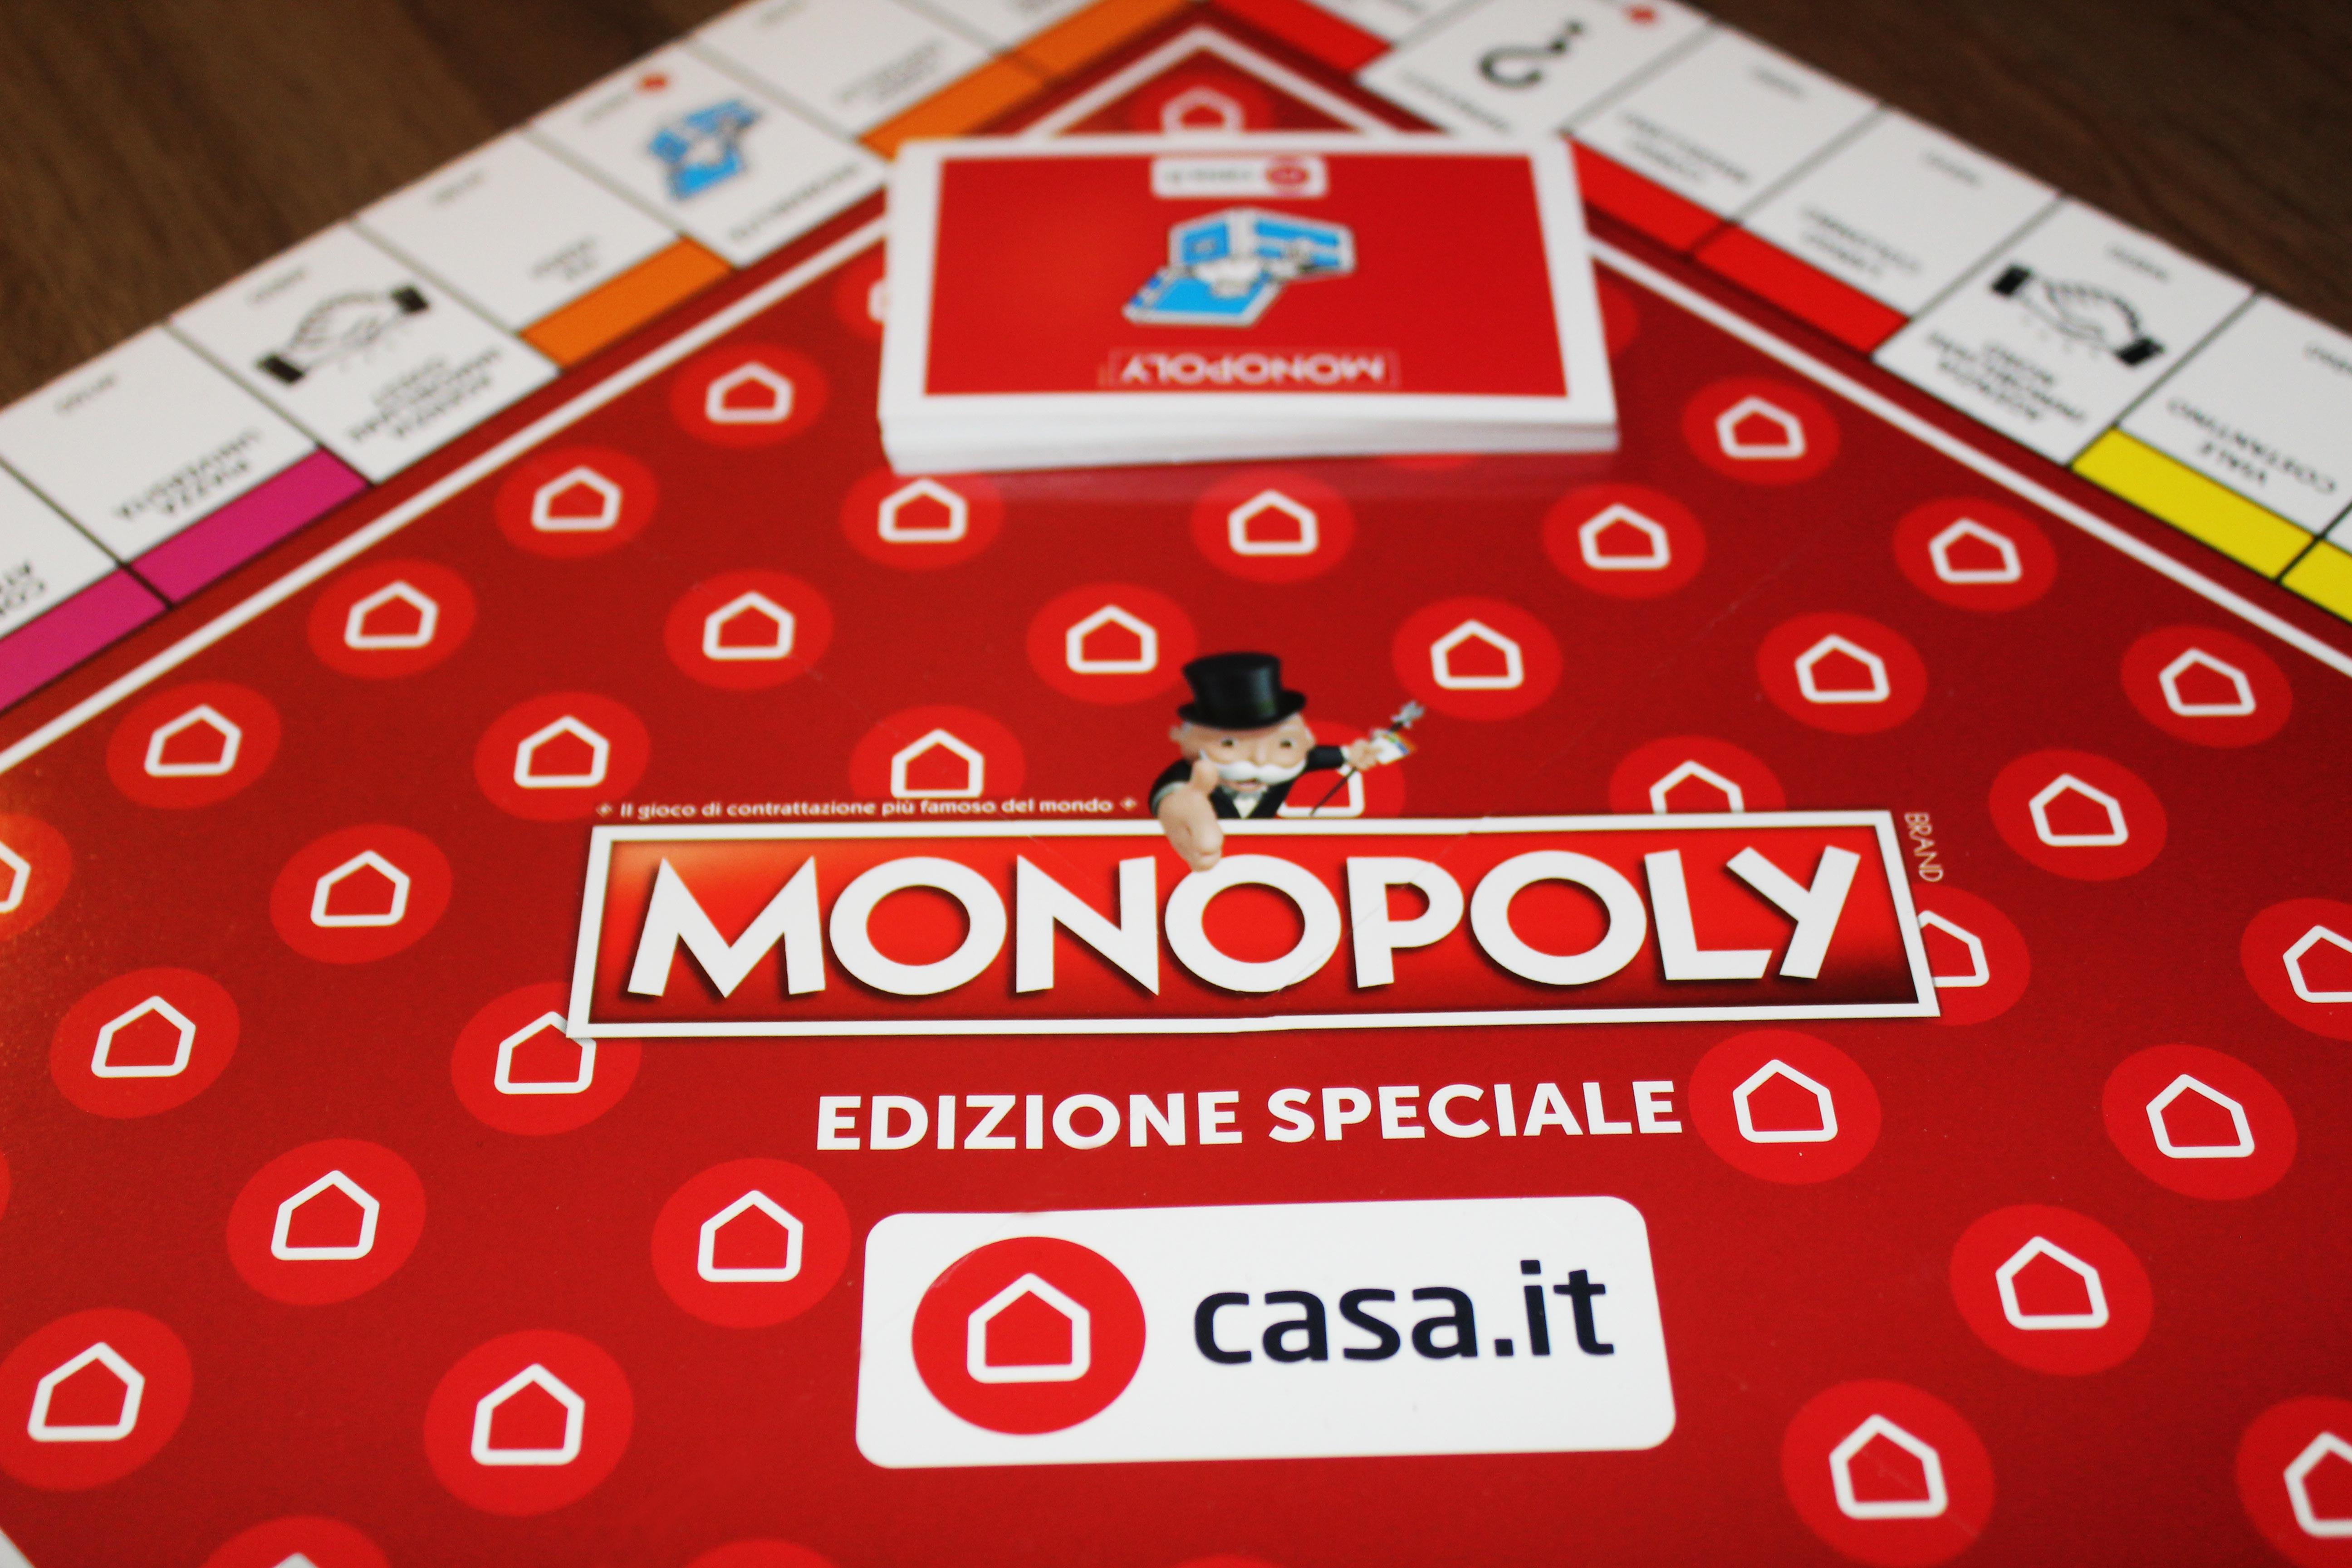  presenta un'edizione speciale del Monopoly - Cose di Casa